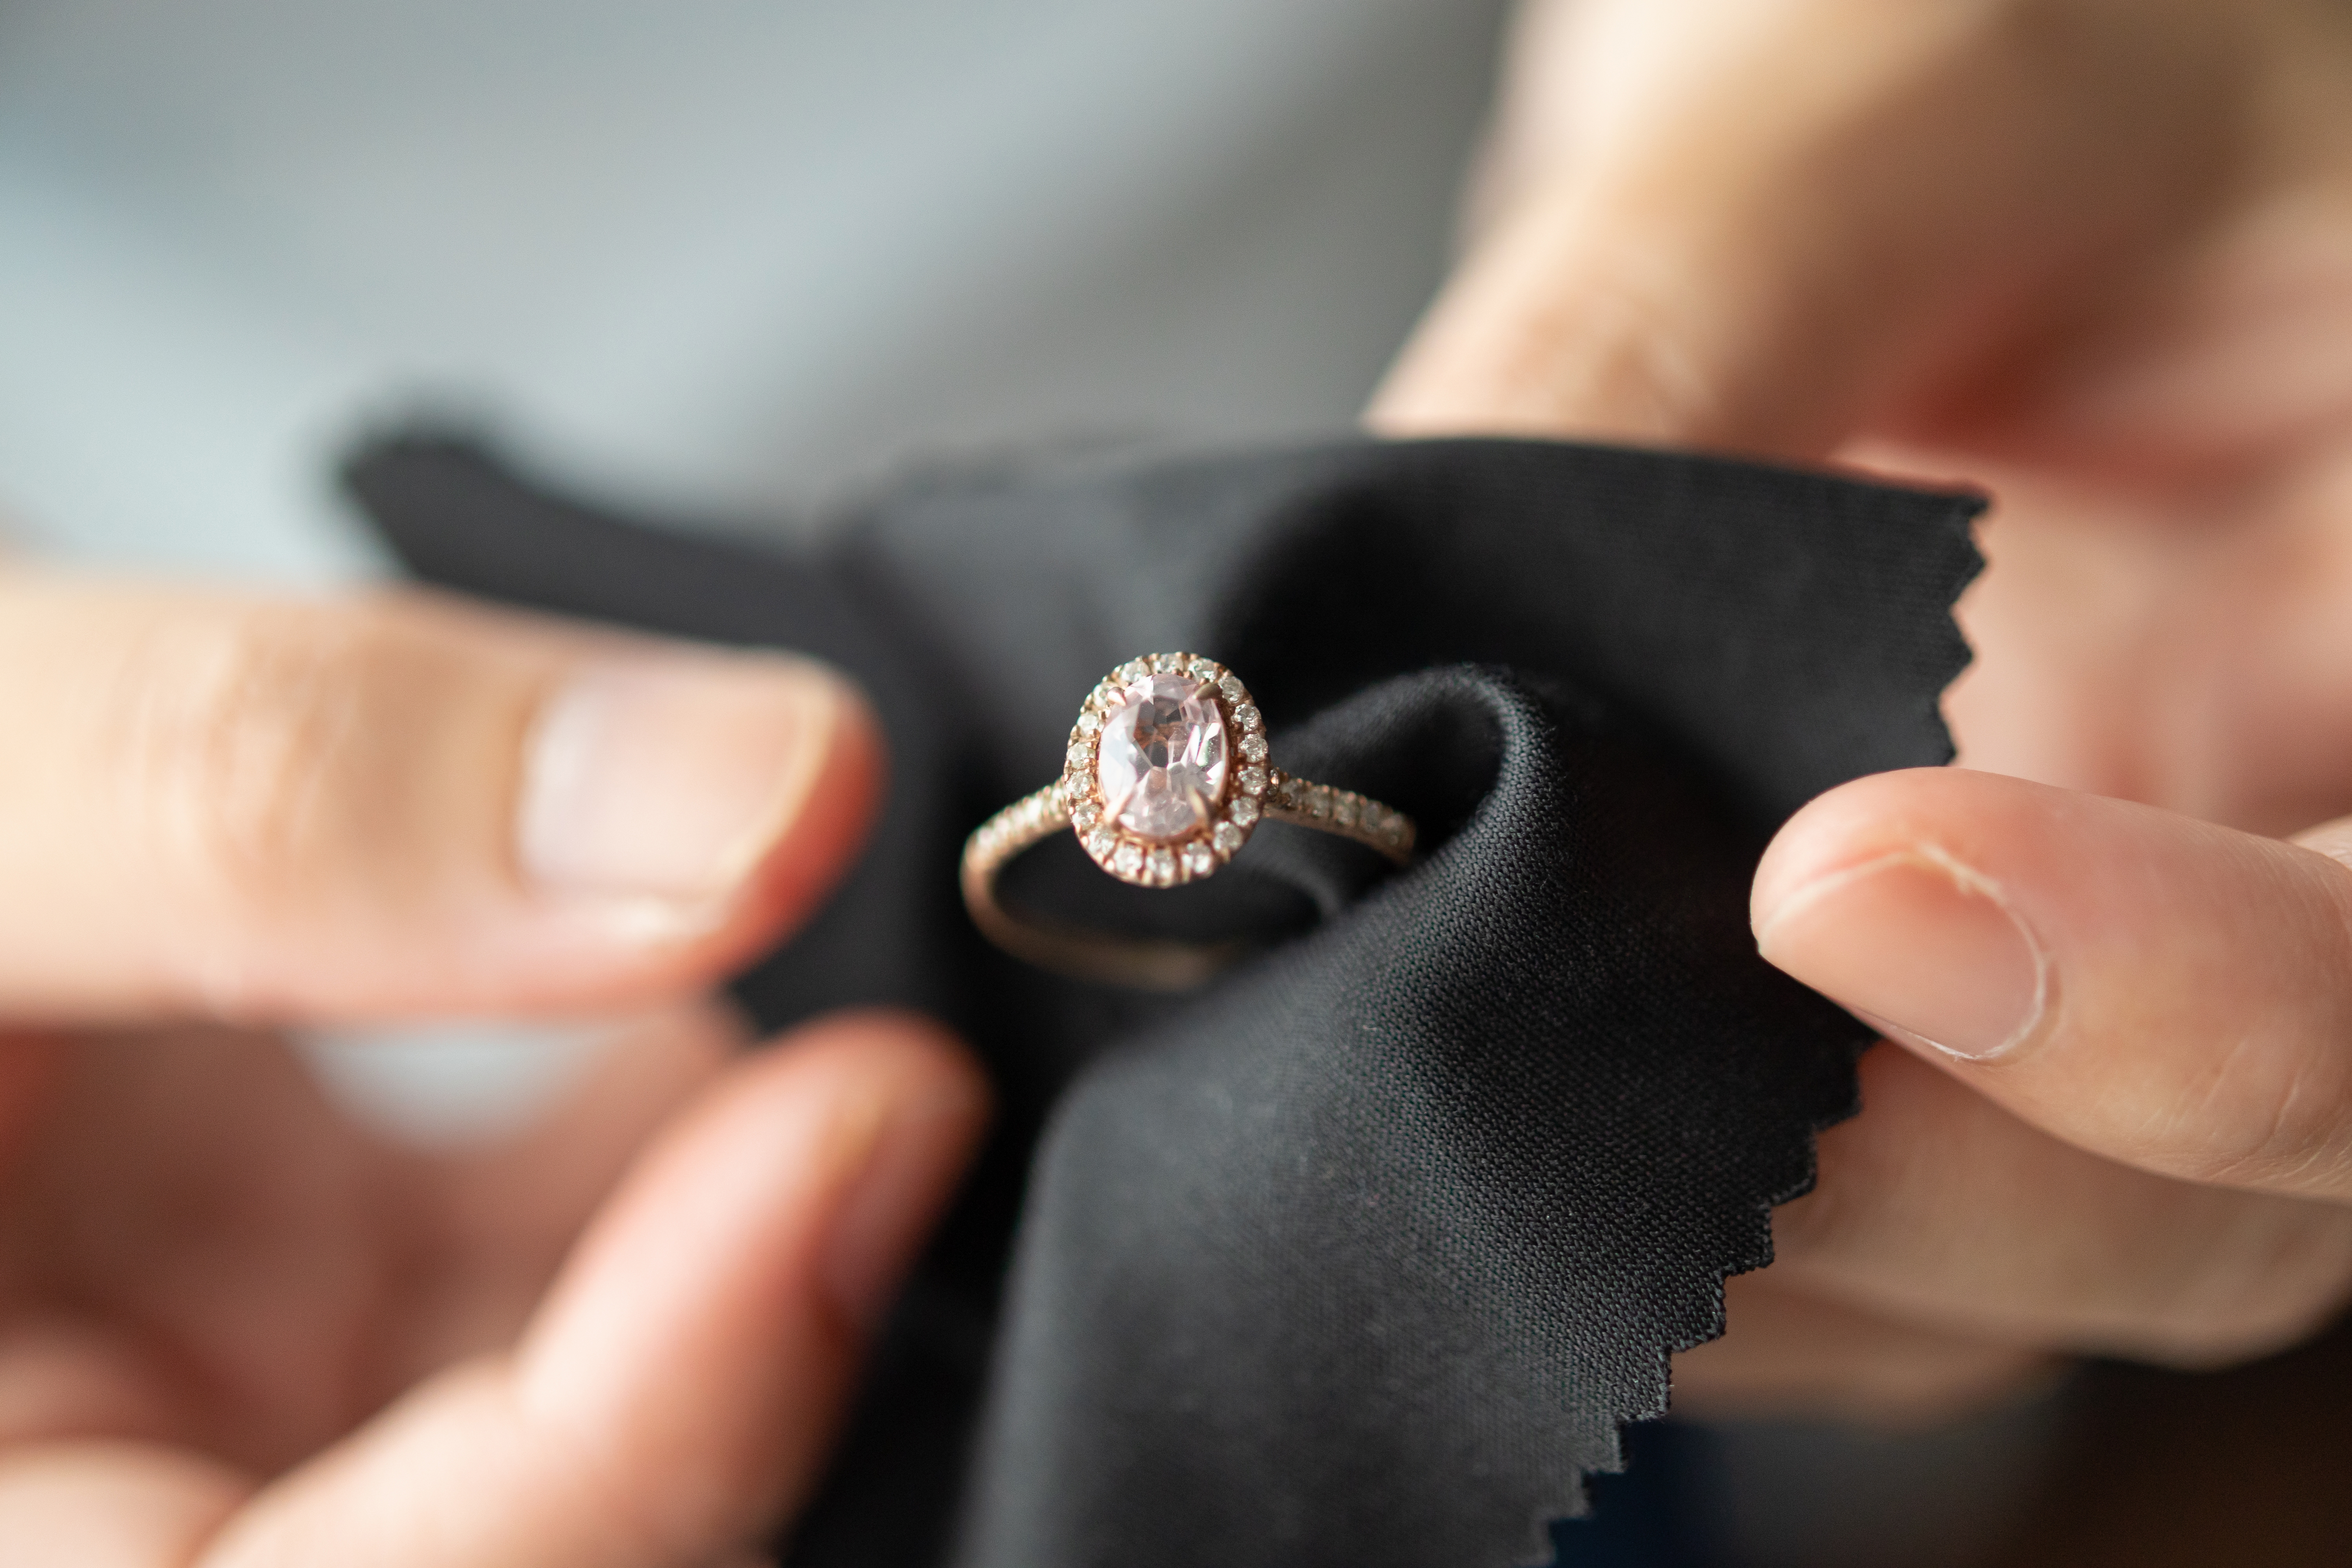 Bague en diamant sur un tissu | Source : Shutterstock